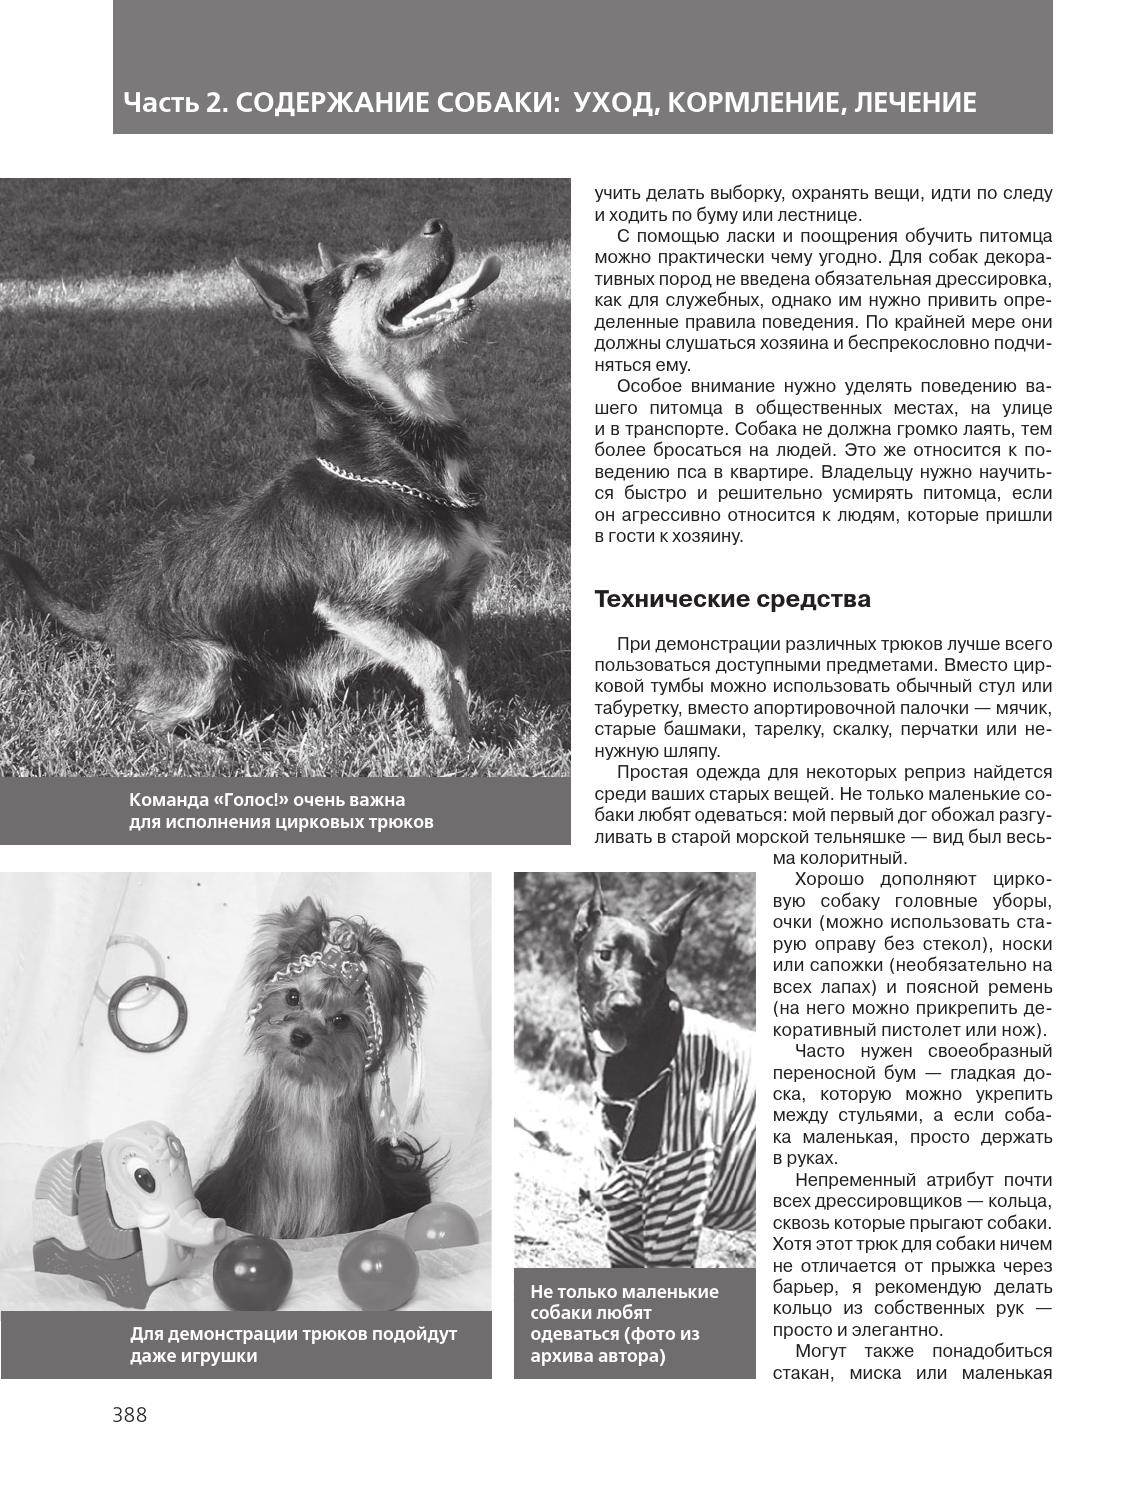 Обзор и описание маленьких пород собак